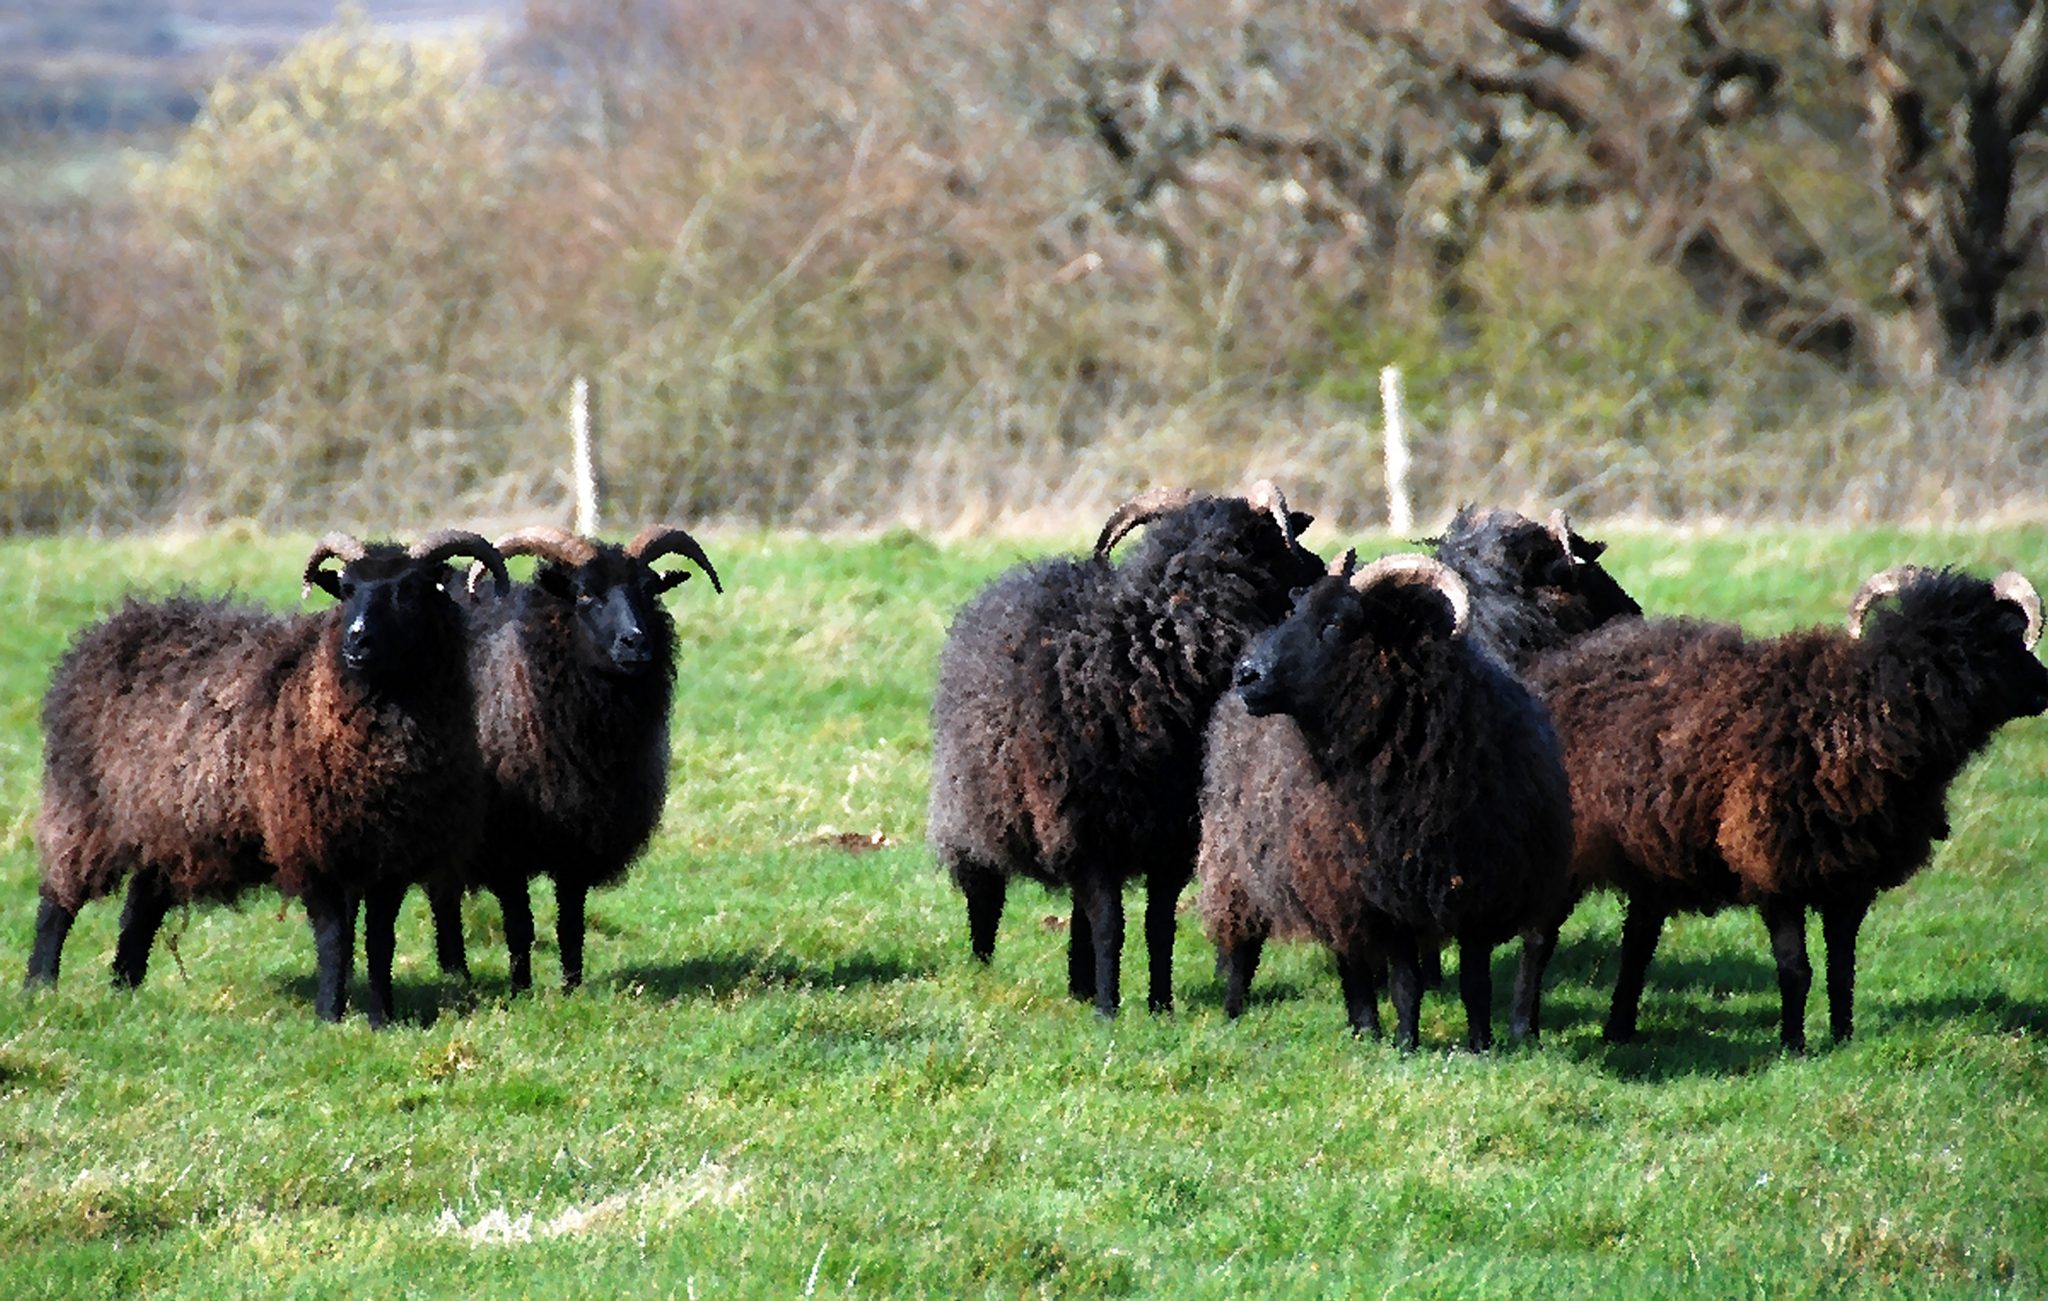 Baa, Baa, Black Sheep, Have You Any Wool?